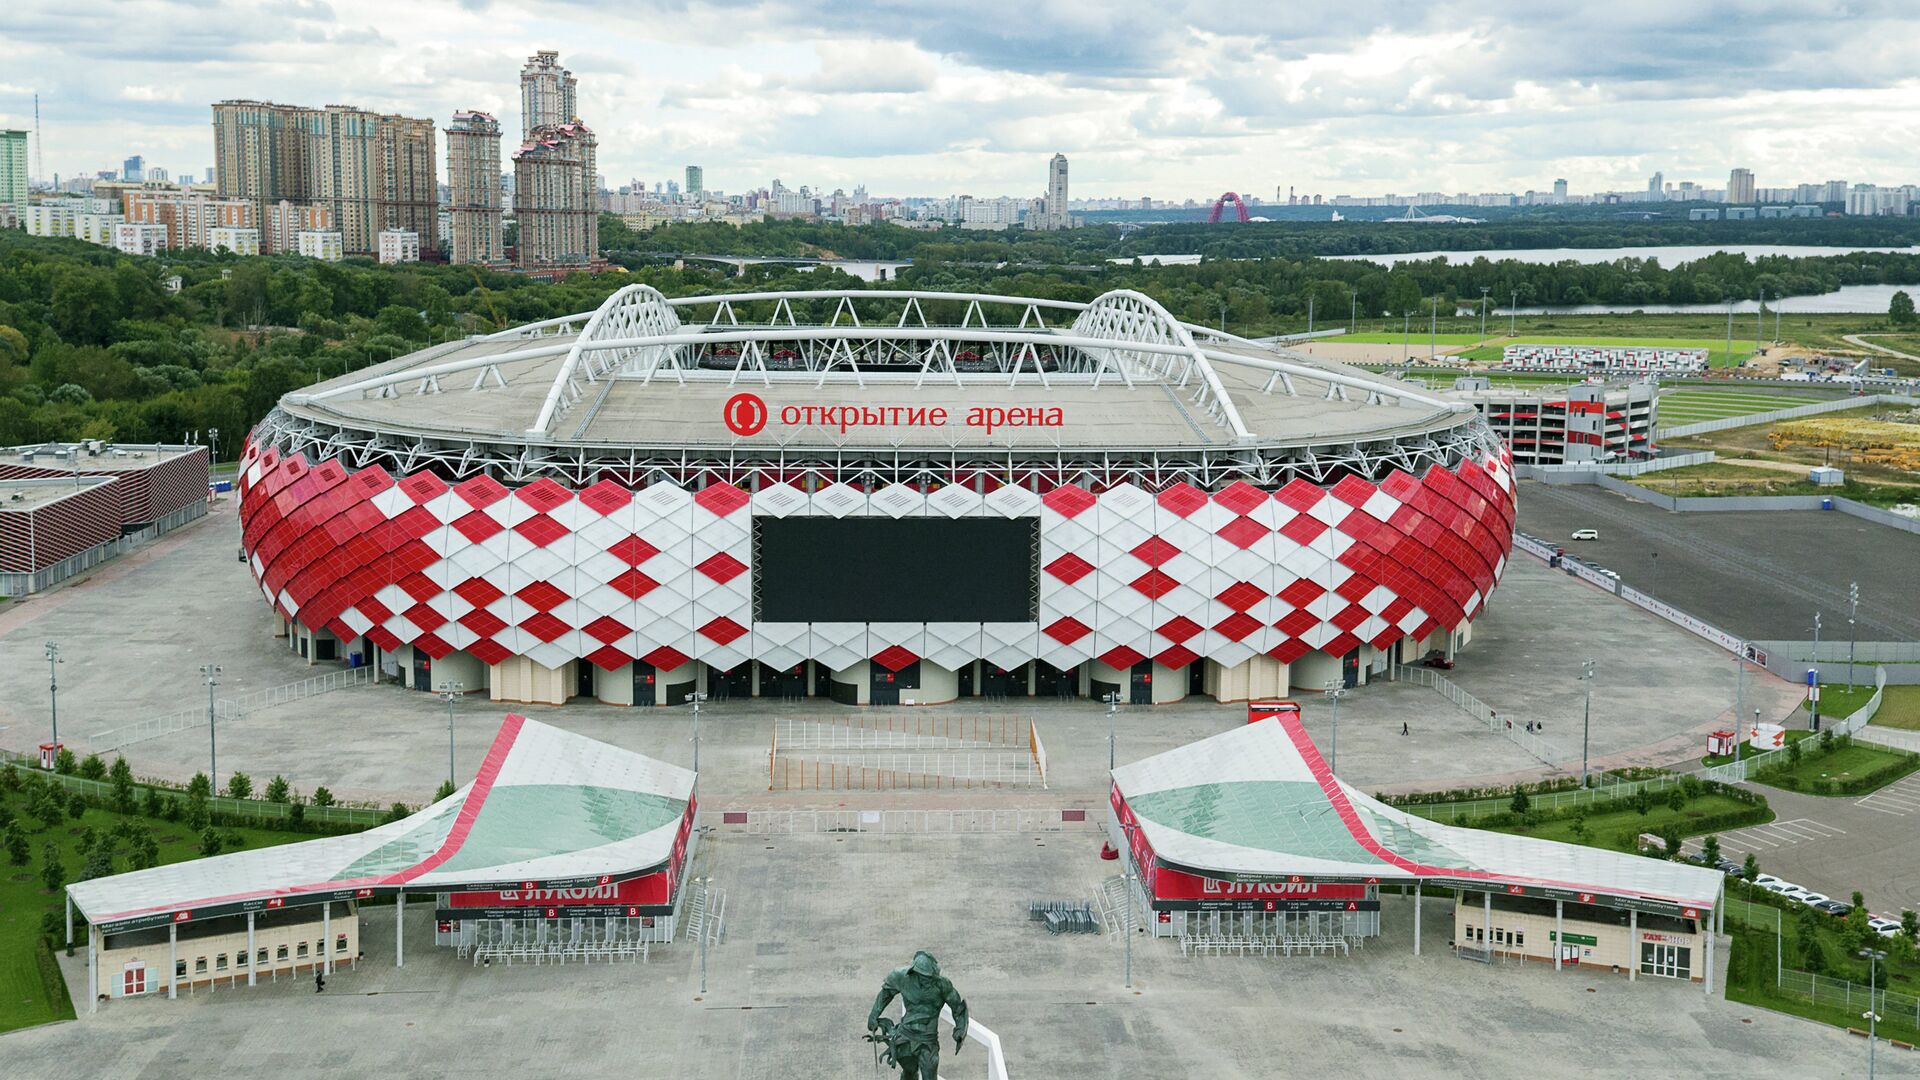 FC Spartak Moscow (Russian: Футбольный клуб «Спартак» Москва